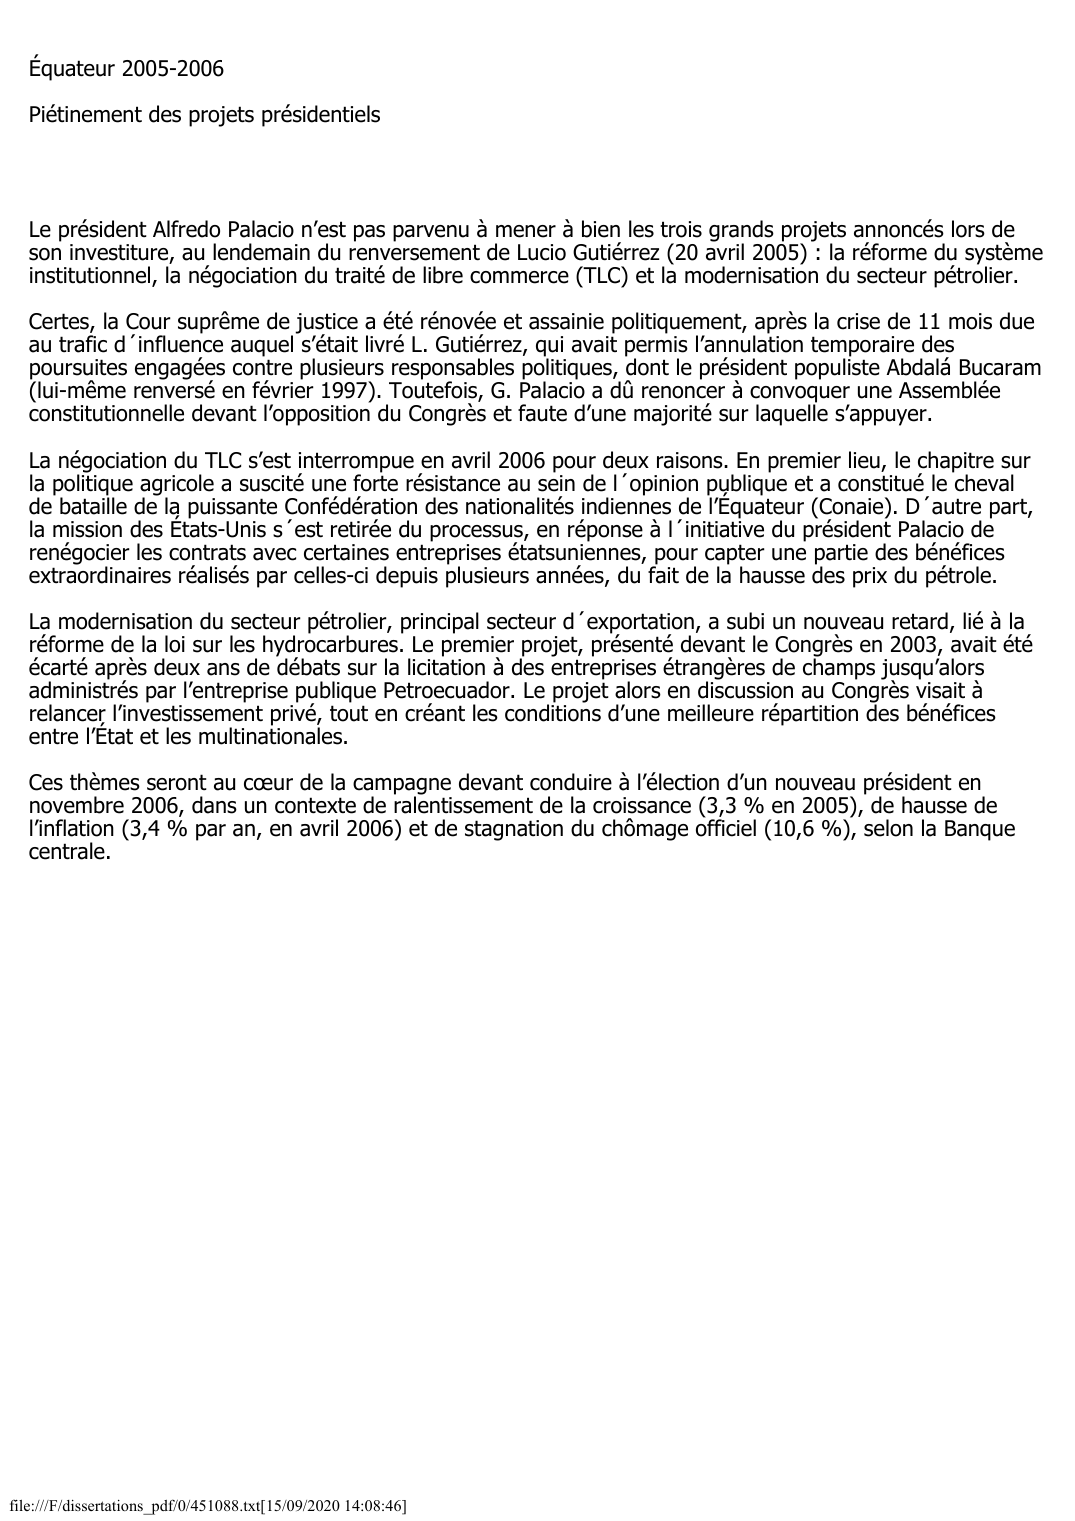 Prévisualisation du document Équateur (2005-2006): Piétinement des projets présidentiels